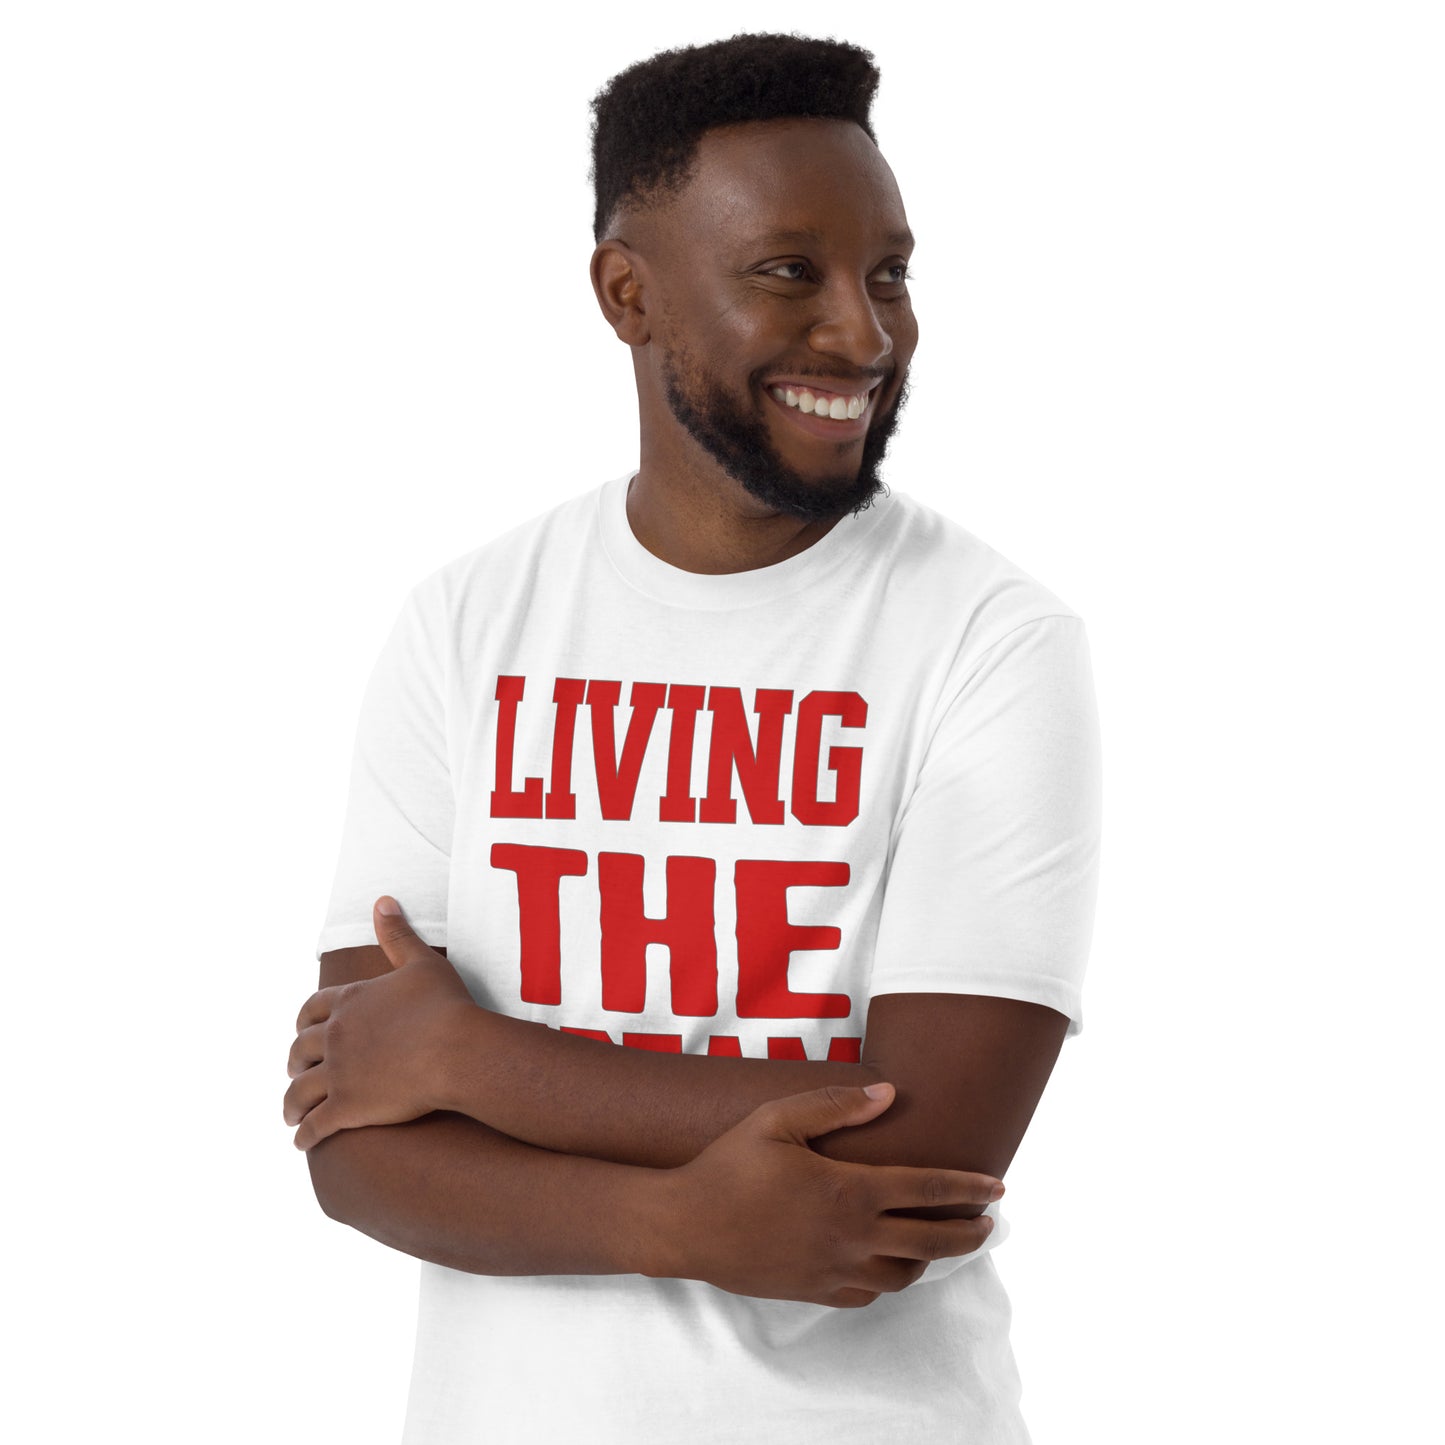 Living the Dream Short-Sleeve Unisex T-Shirt